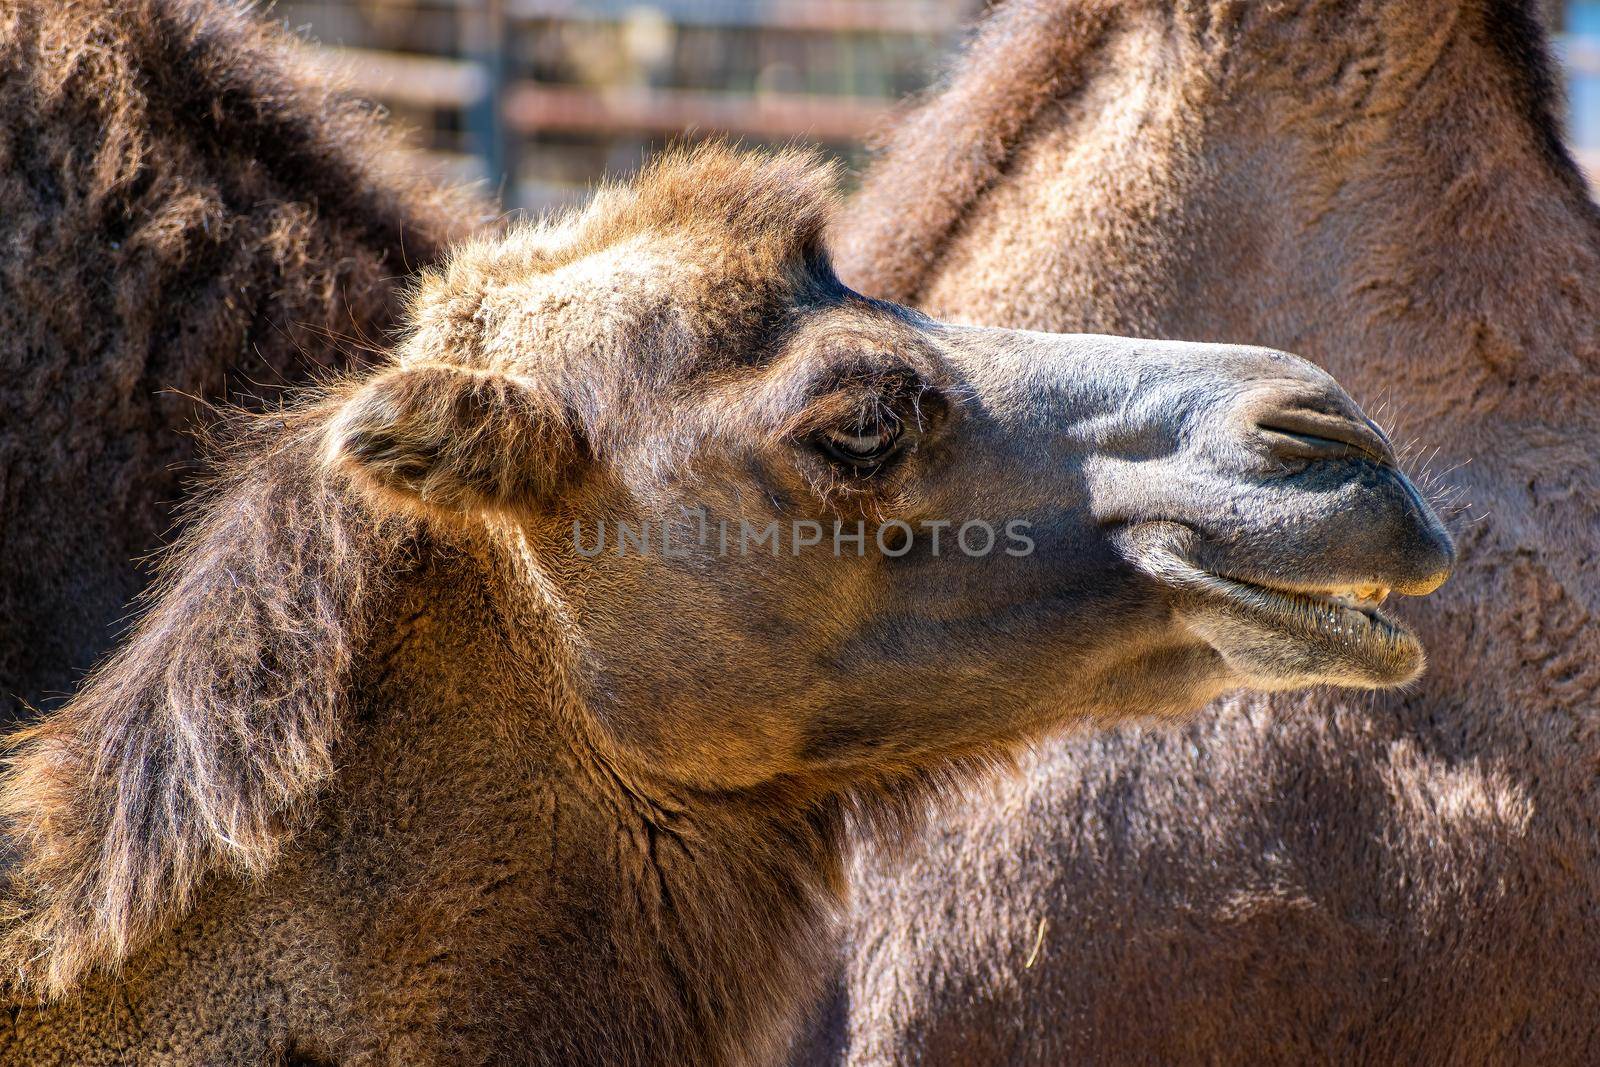 ZOO Hodonin, Czech Republic, South Moravia. Camel head close-up shot side view